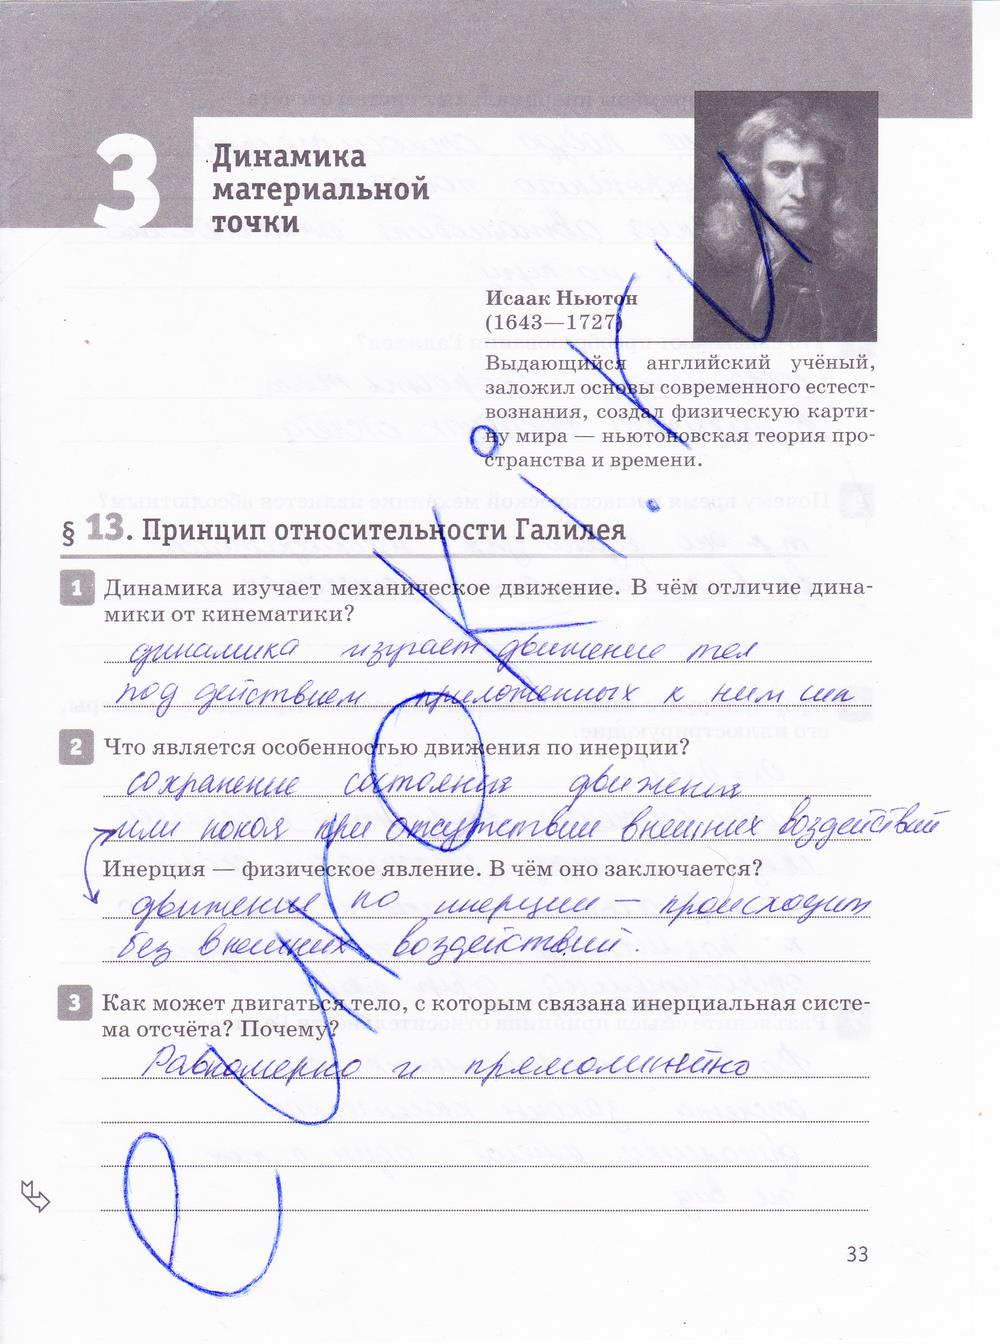 гдз 10 класс рабочая тетрадь страница 33 физика Касьянов, Дмитриева